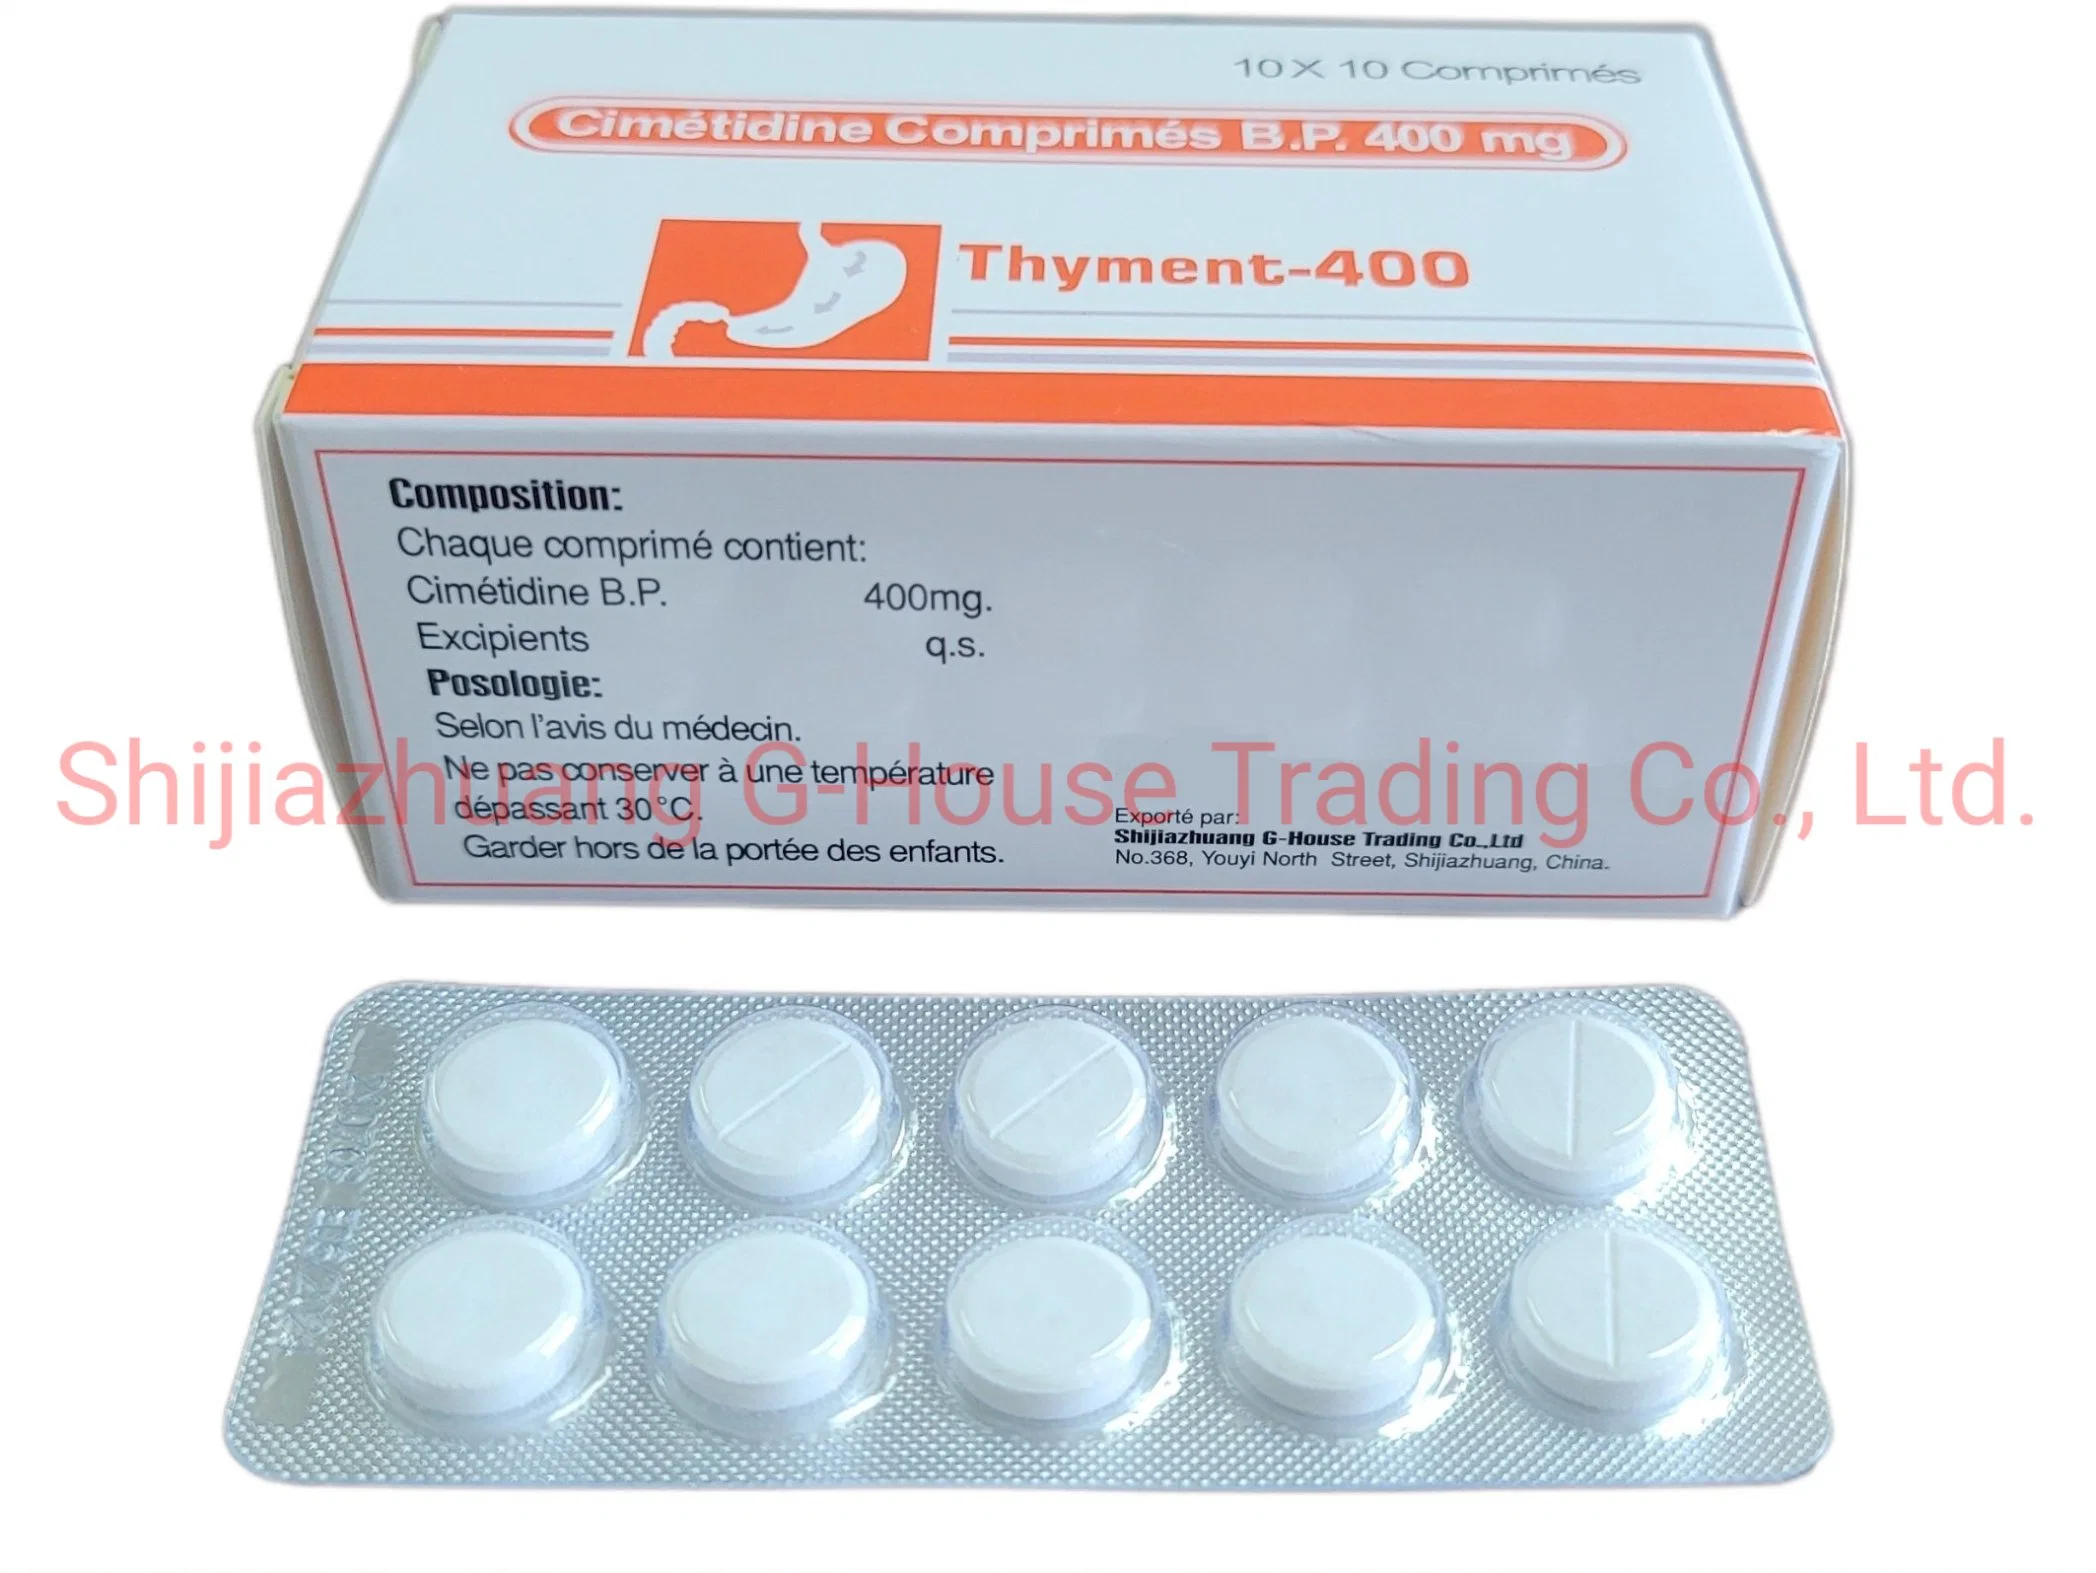 La cimétidine comprimés de médicaments pharmaceutiques finis